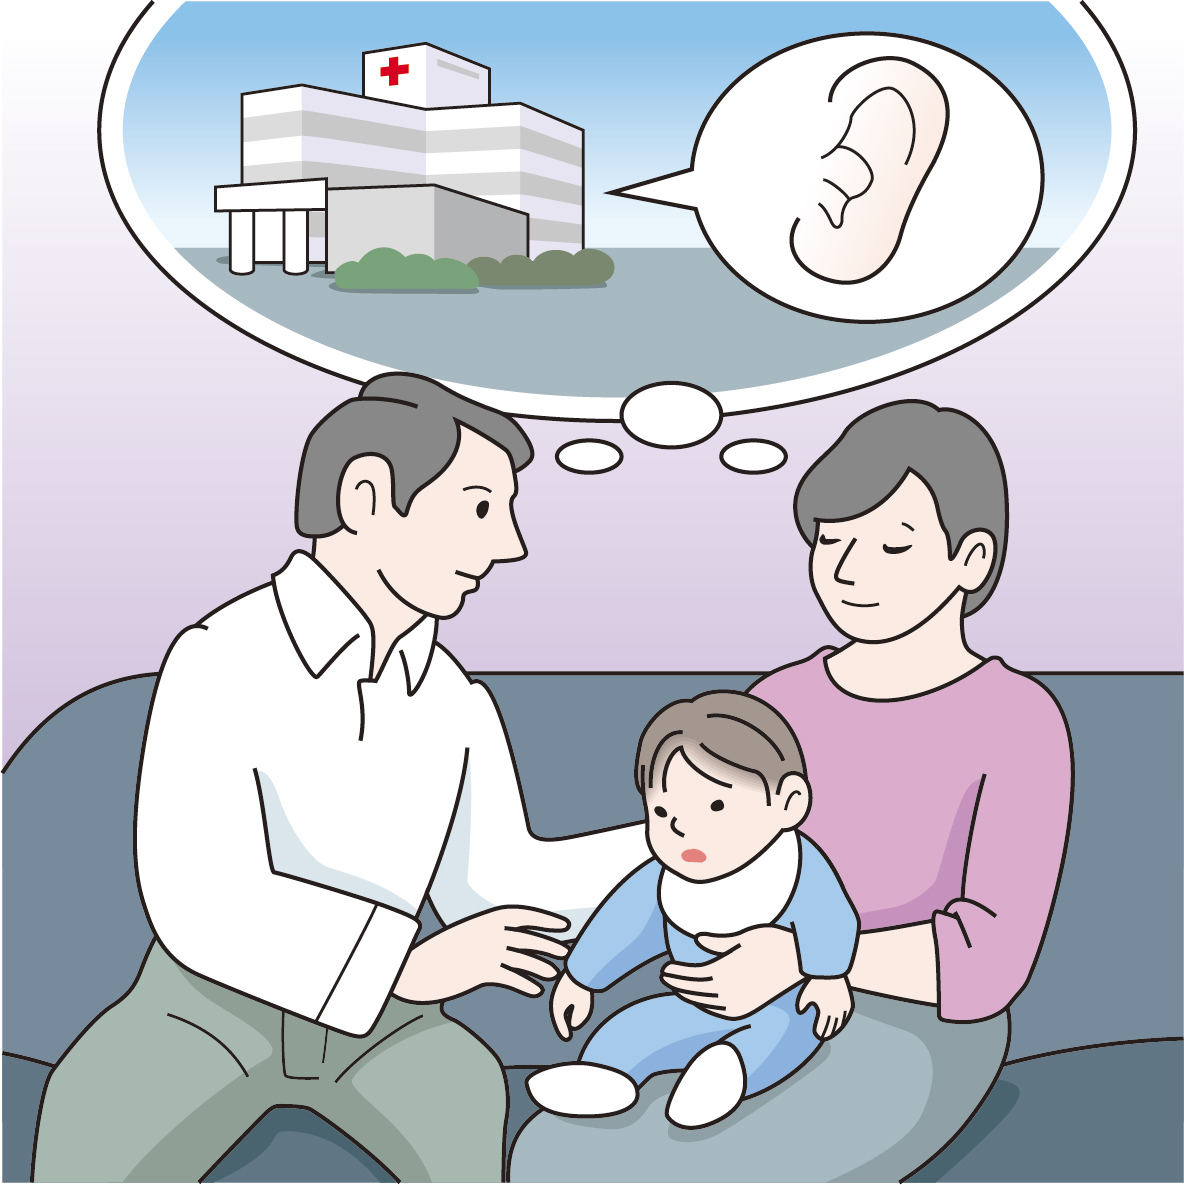 言葉の発達が遅く、聞こえに心配があれば、早めに聴覚専門の医療機関へ